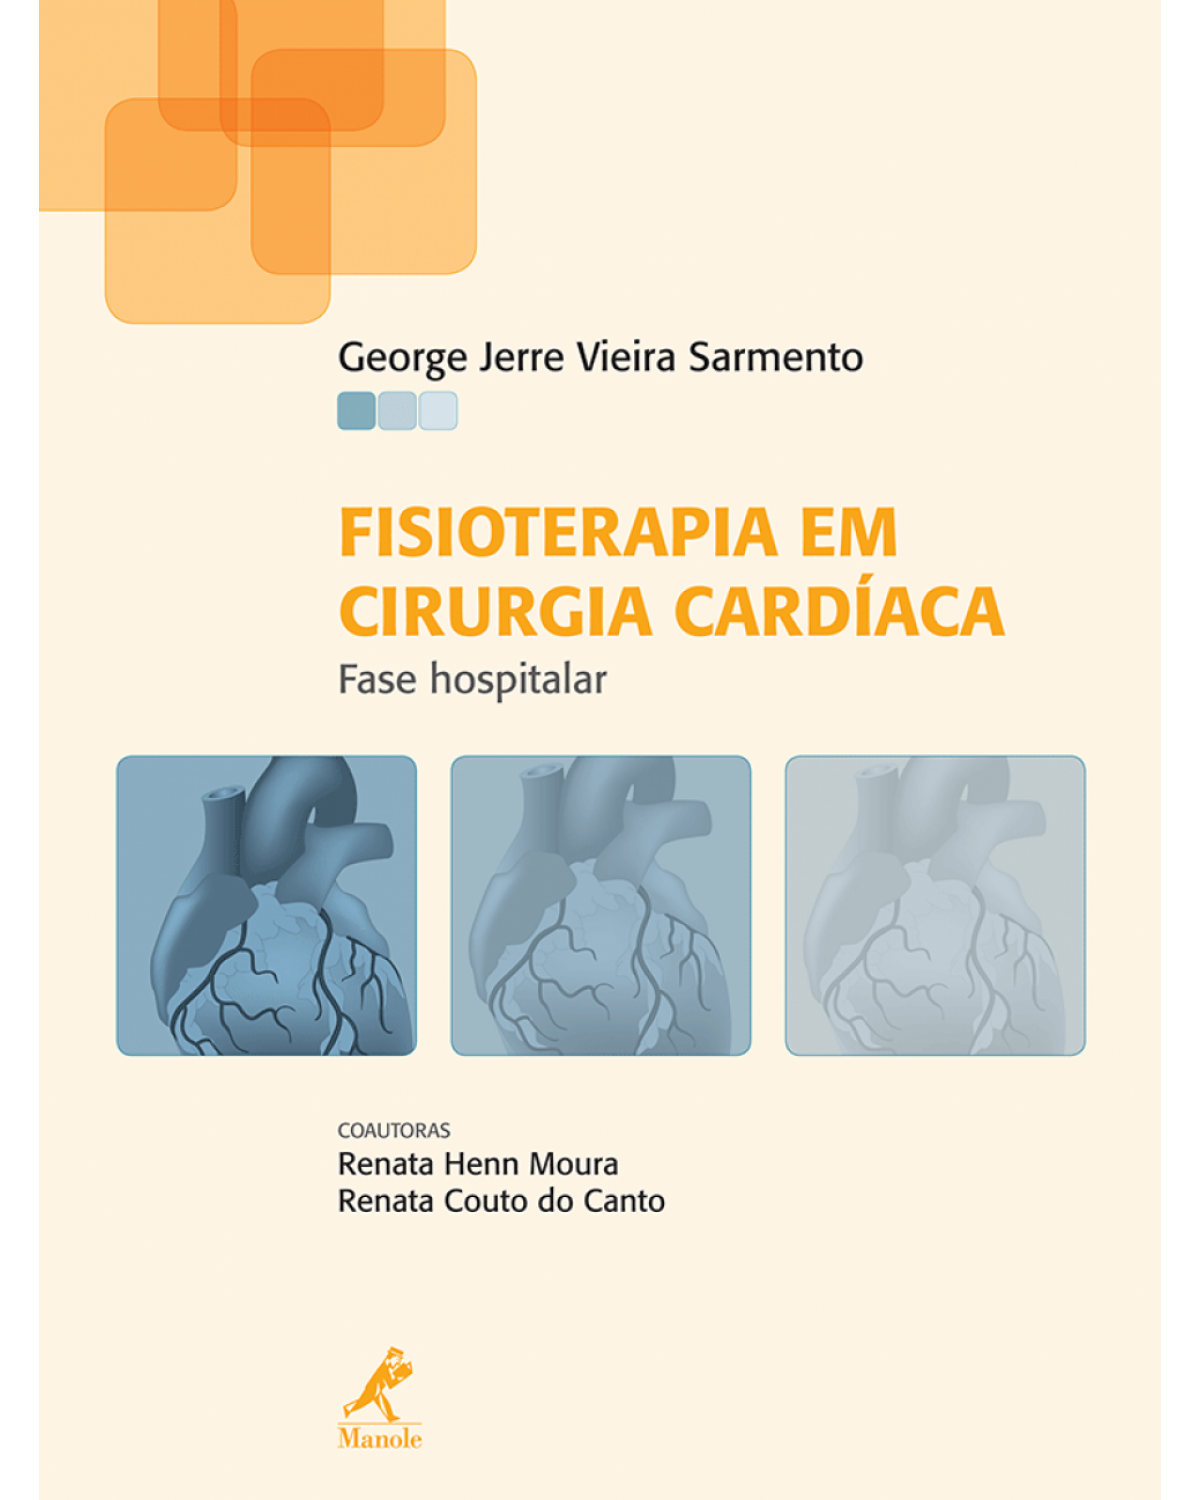 Fisioterapia em cirurgia cardíaca - Fase hospitalar - 1ª Edição | 2013